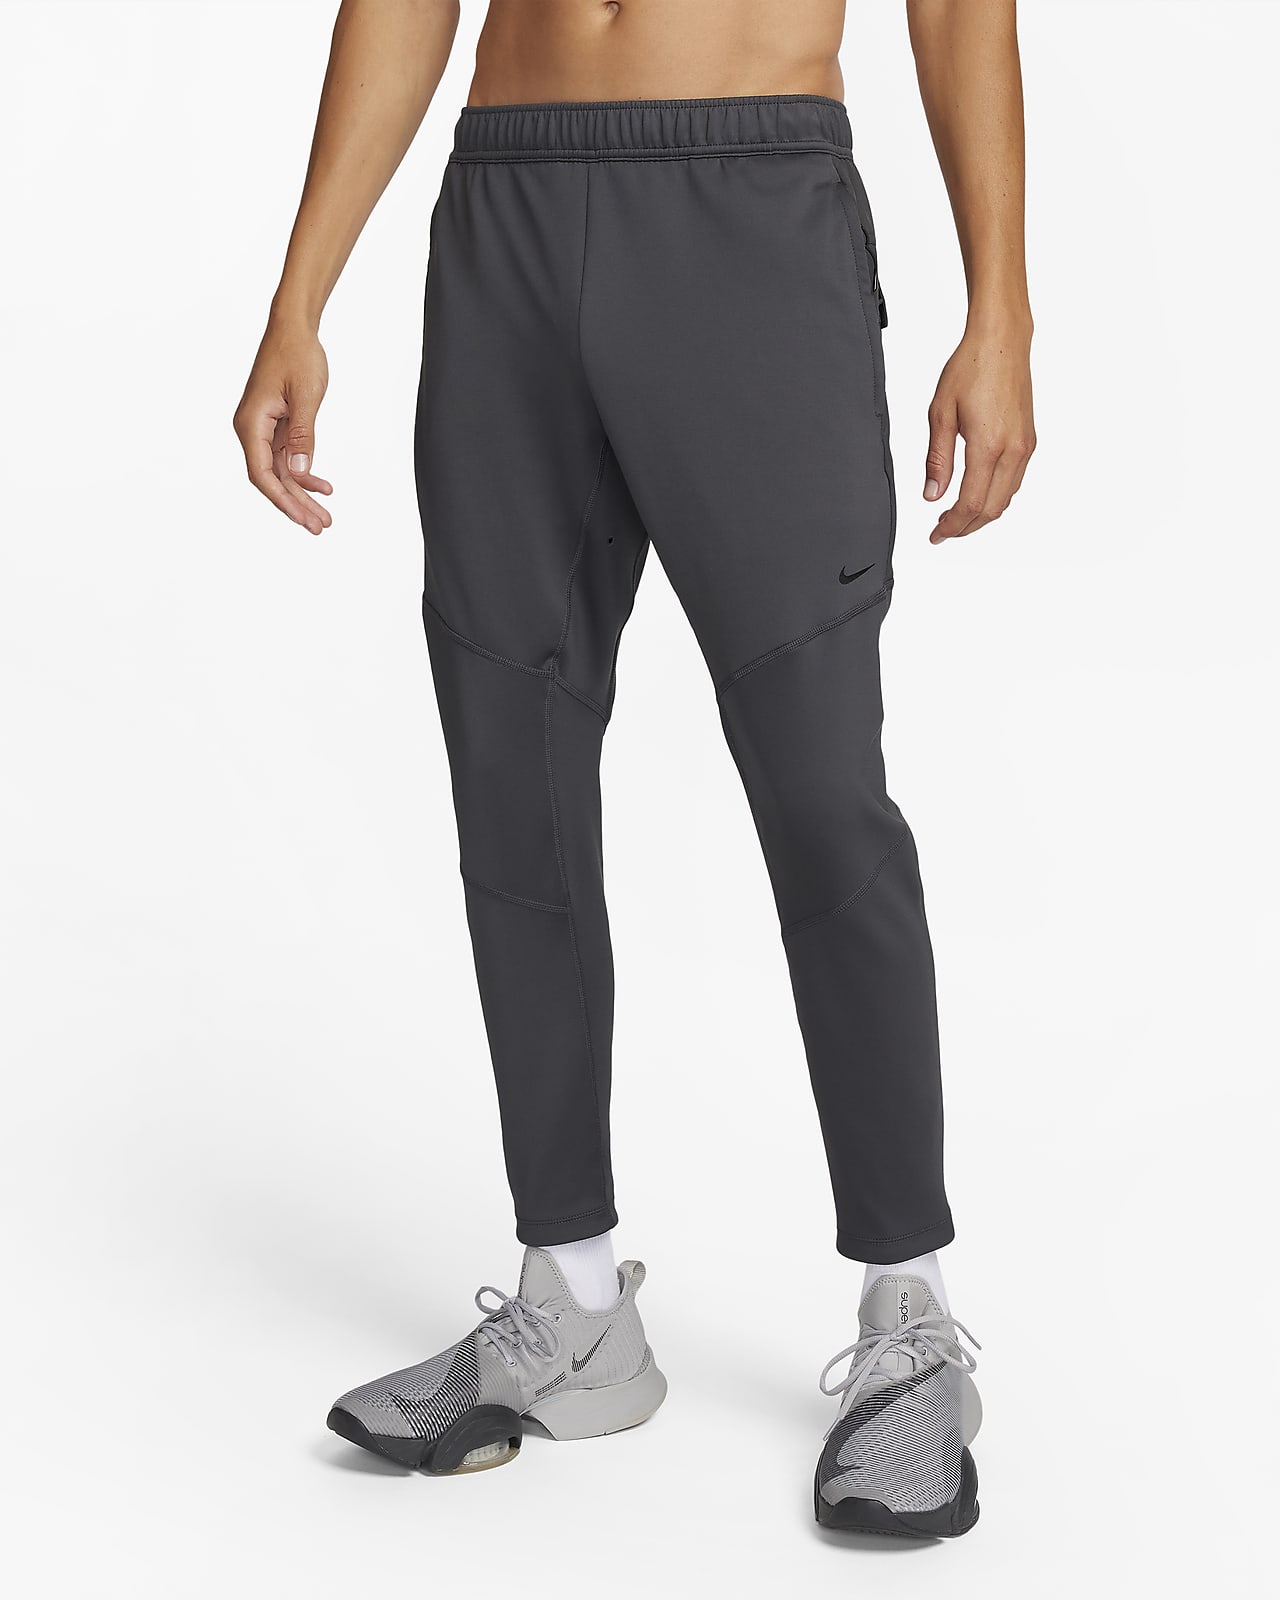 Nike Dri-FIT ADV Axis Pantalons funcionals de fitnes - Home